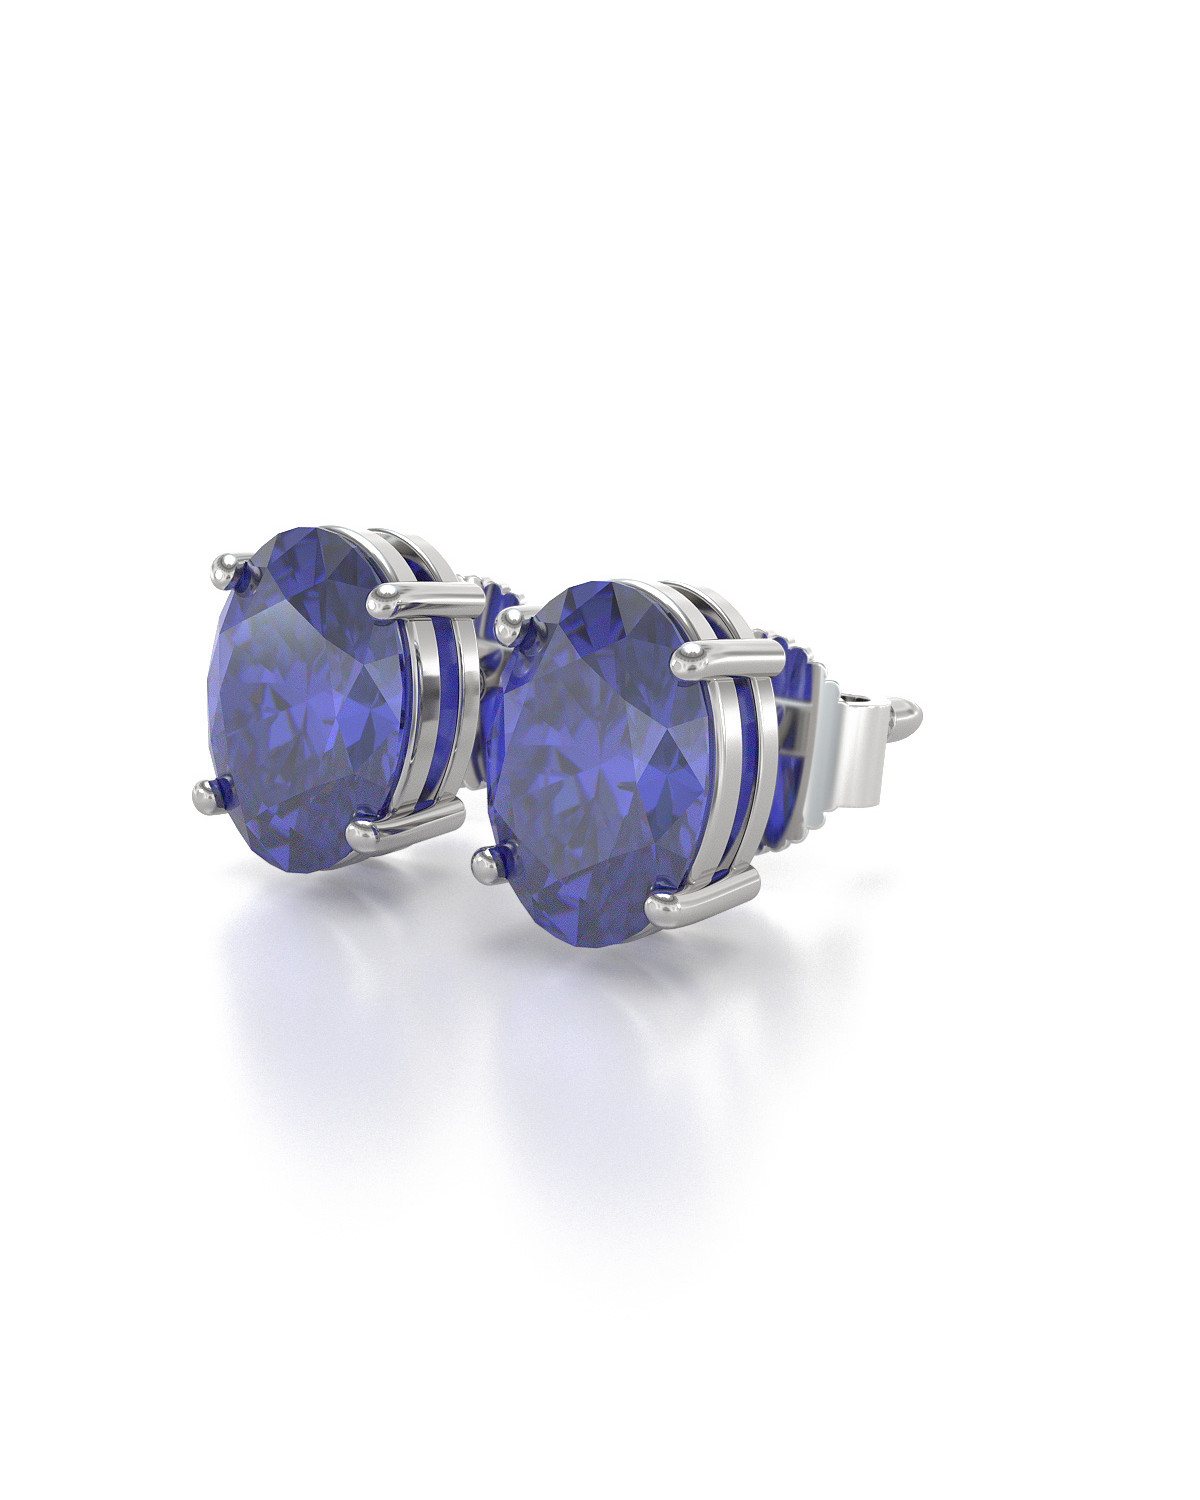 925 Silver TANZANITE Cabochon Earrings E239~Silverwave*uk Jewellery 